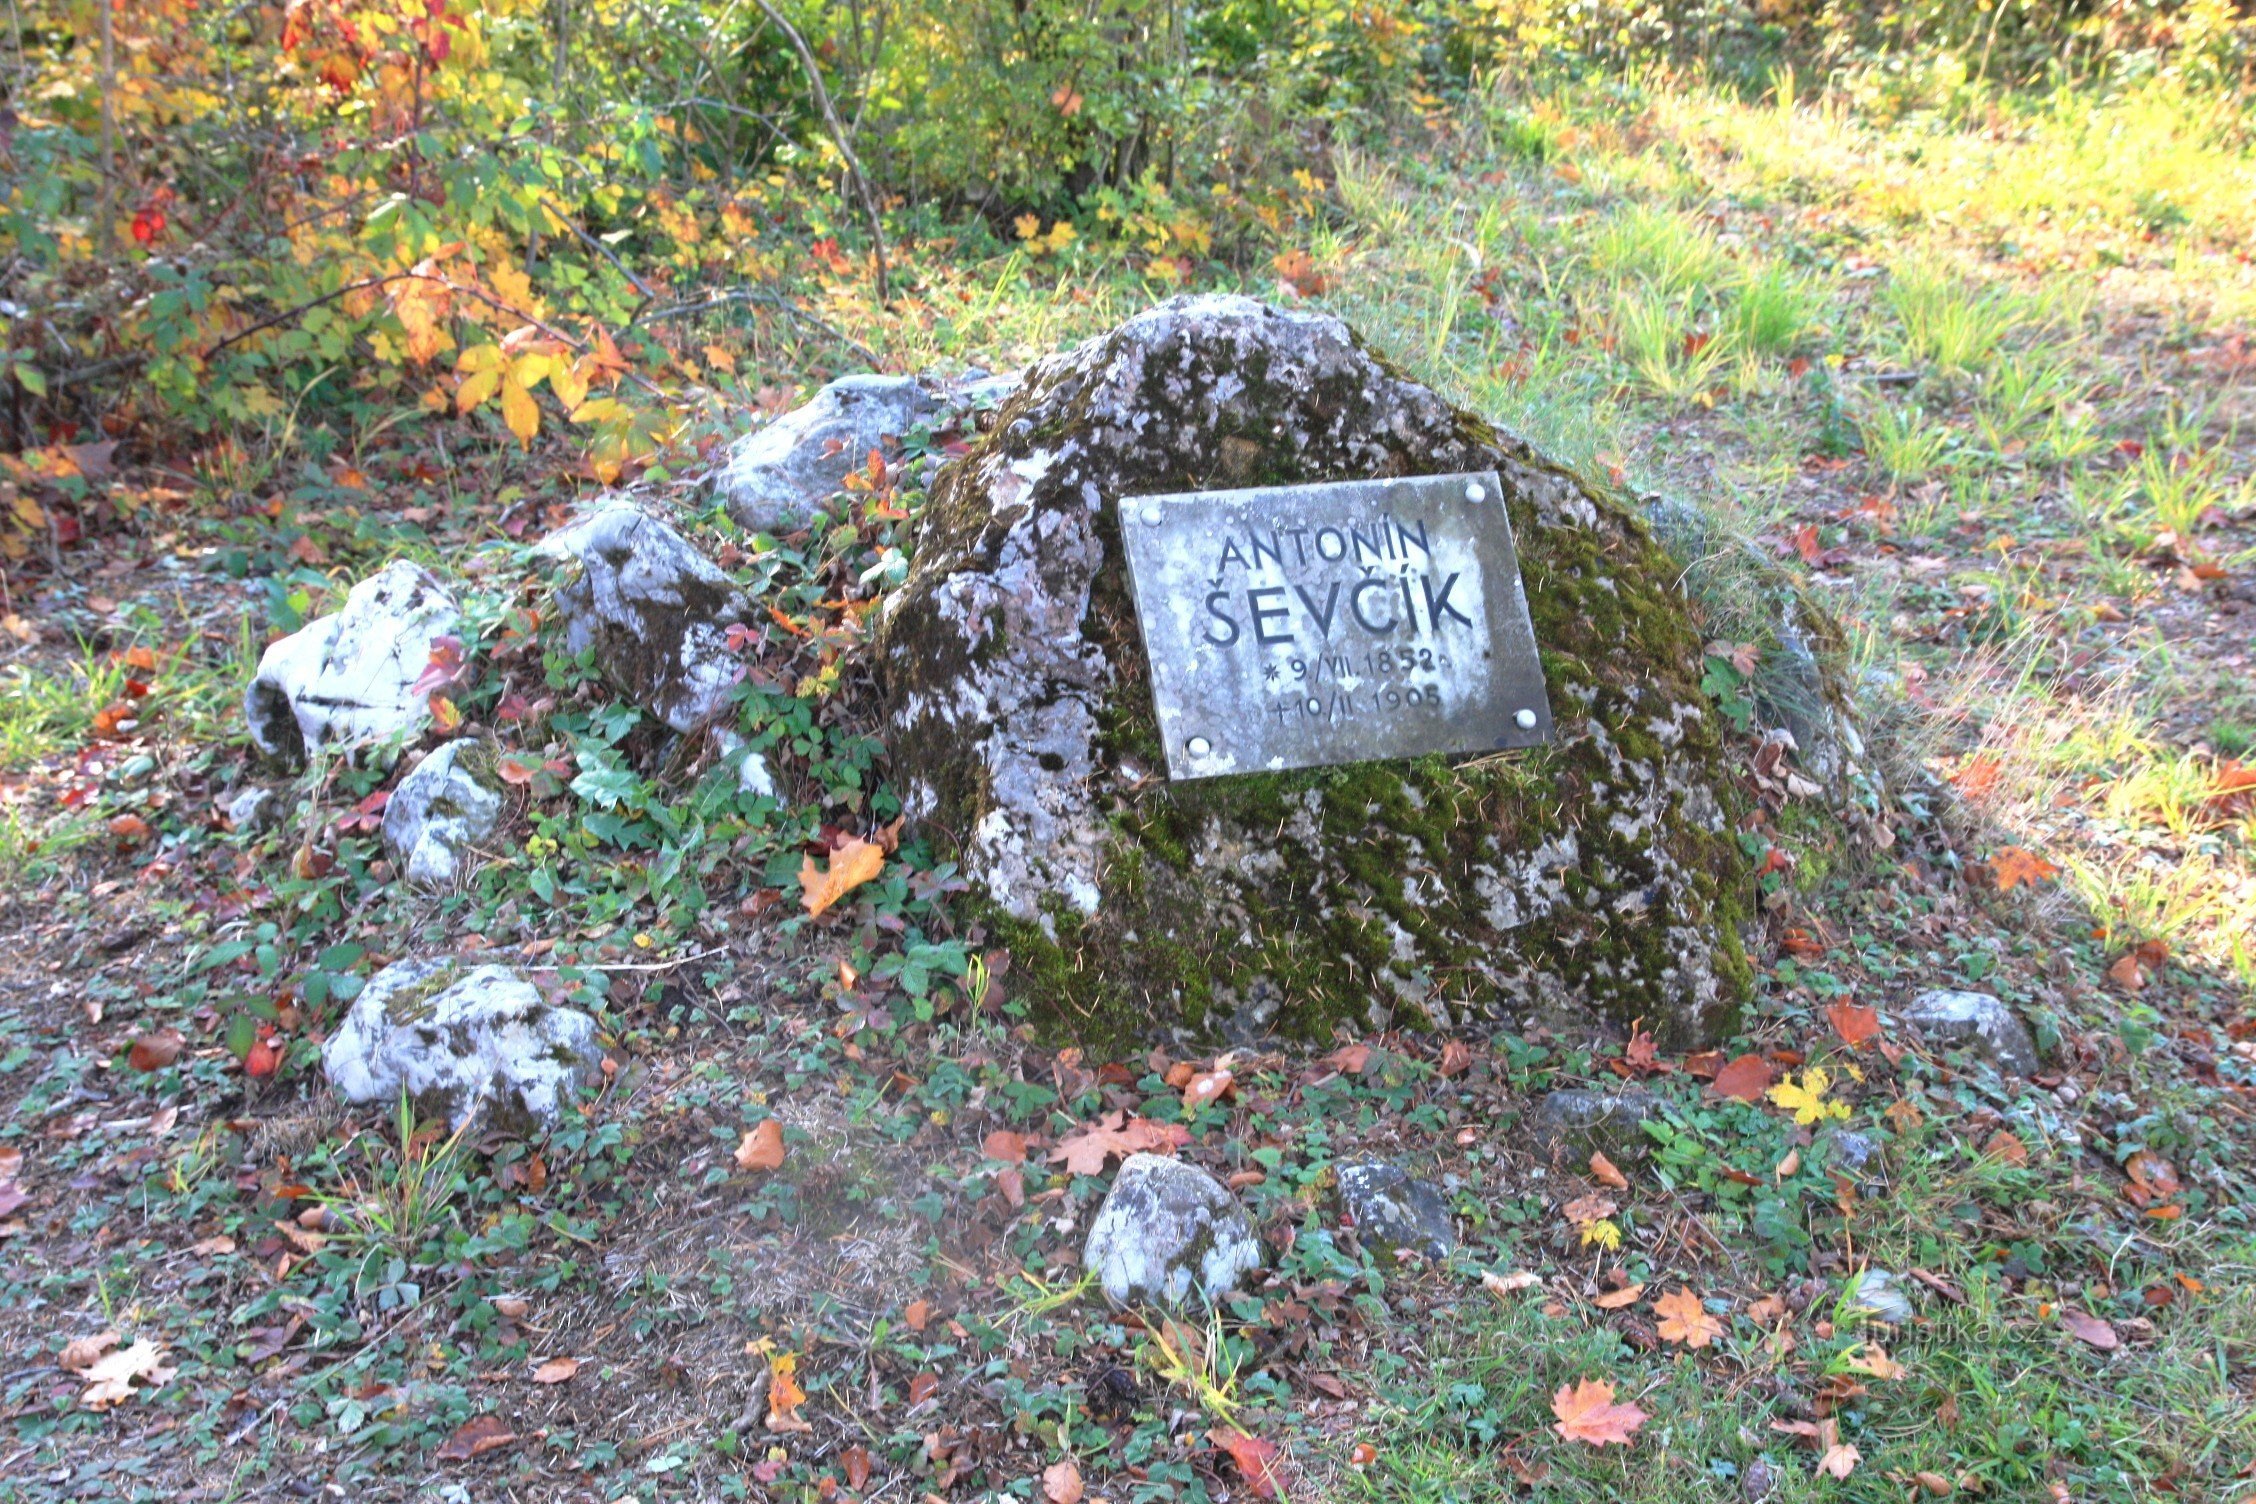 Schatts Reise beginnt am Denkmal für A. Ševčík